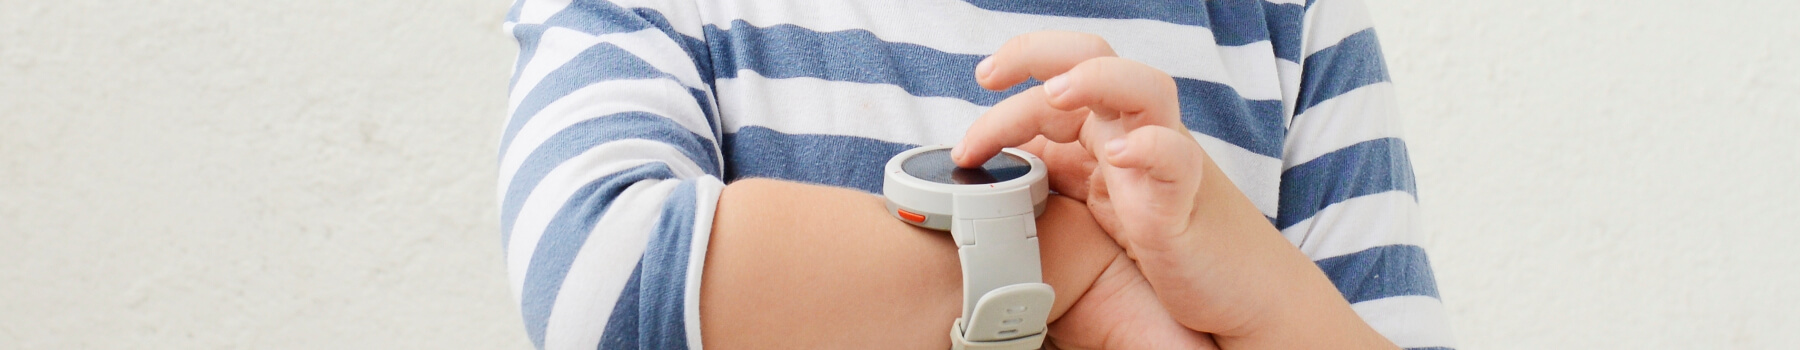 Smartwatch dla dziecka - jaki wybrać i na co zwrócić uwagę?